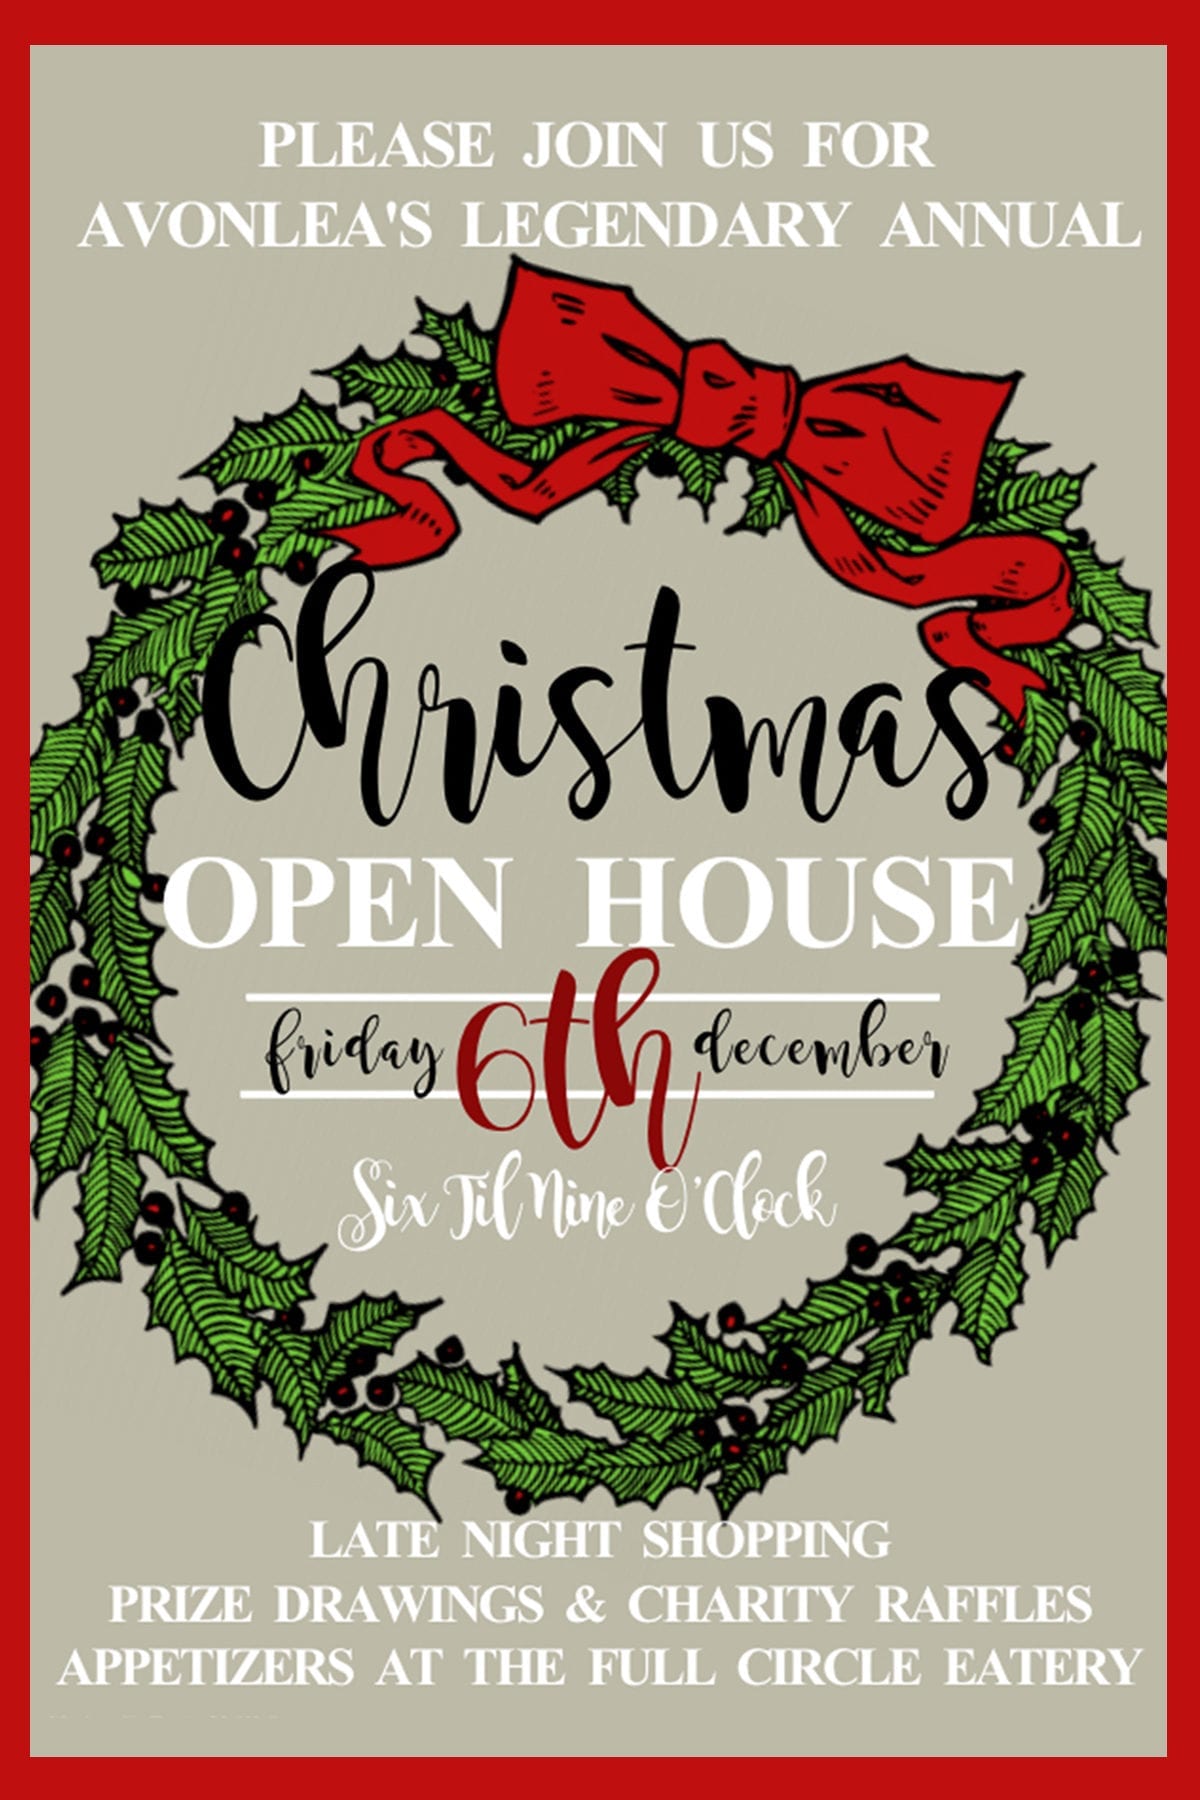 Avonlea's Christmas Open House